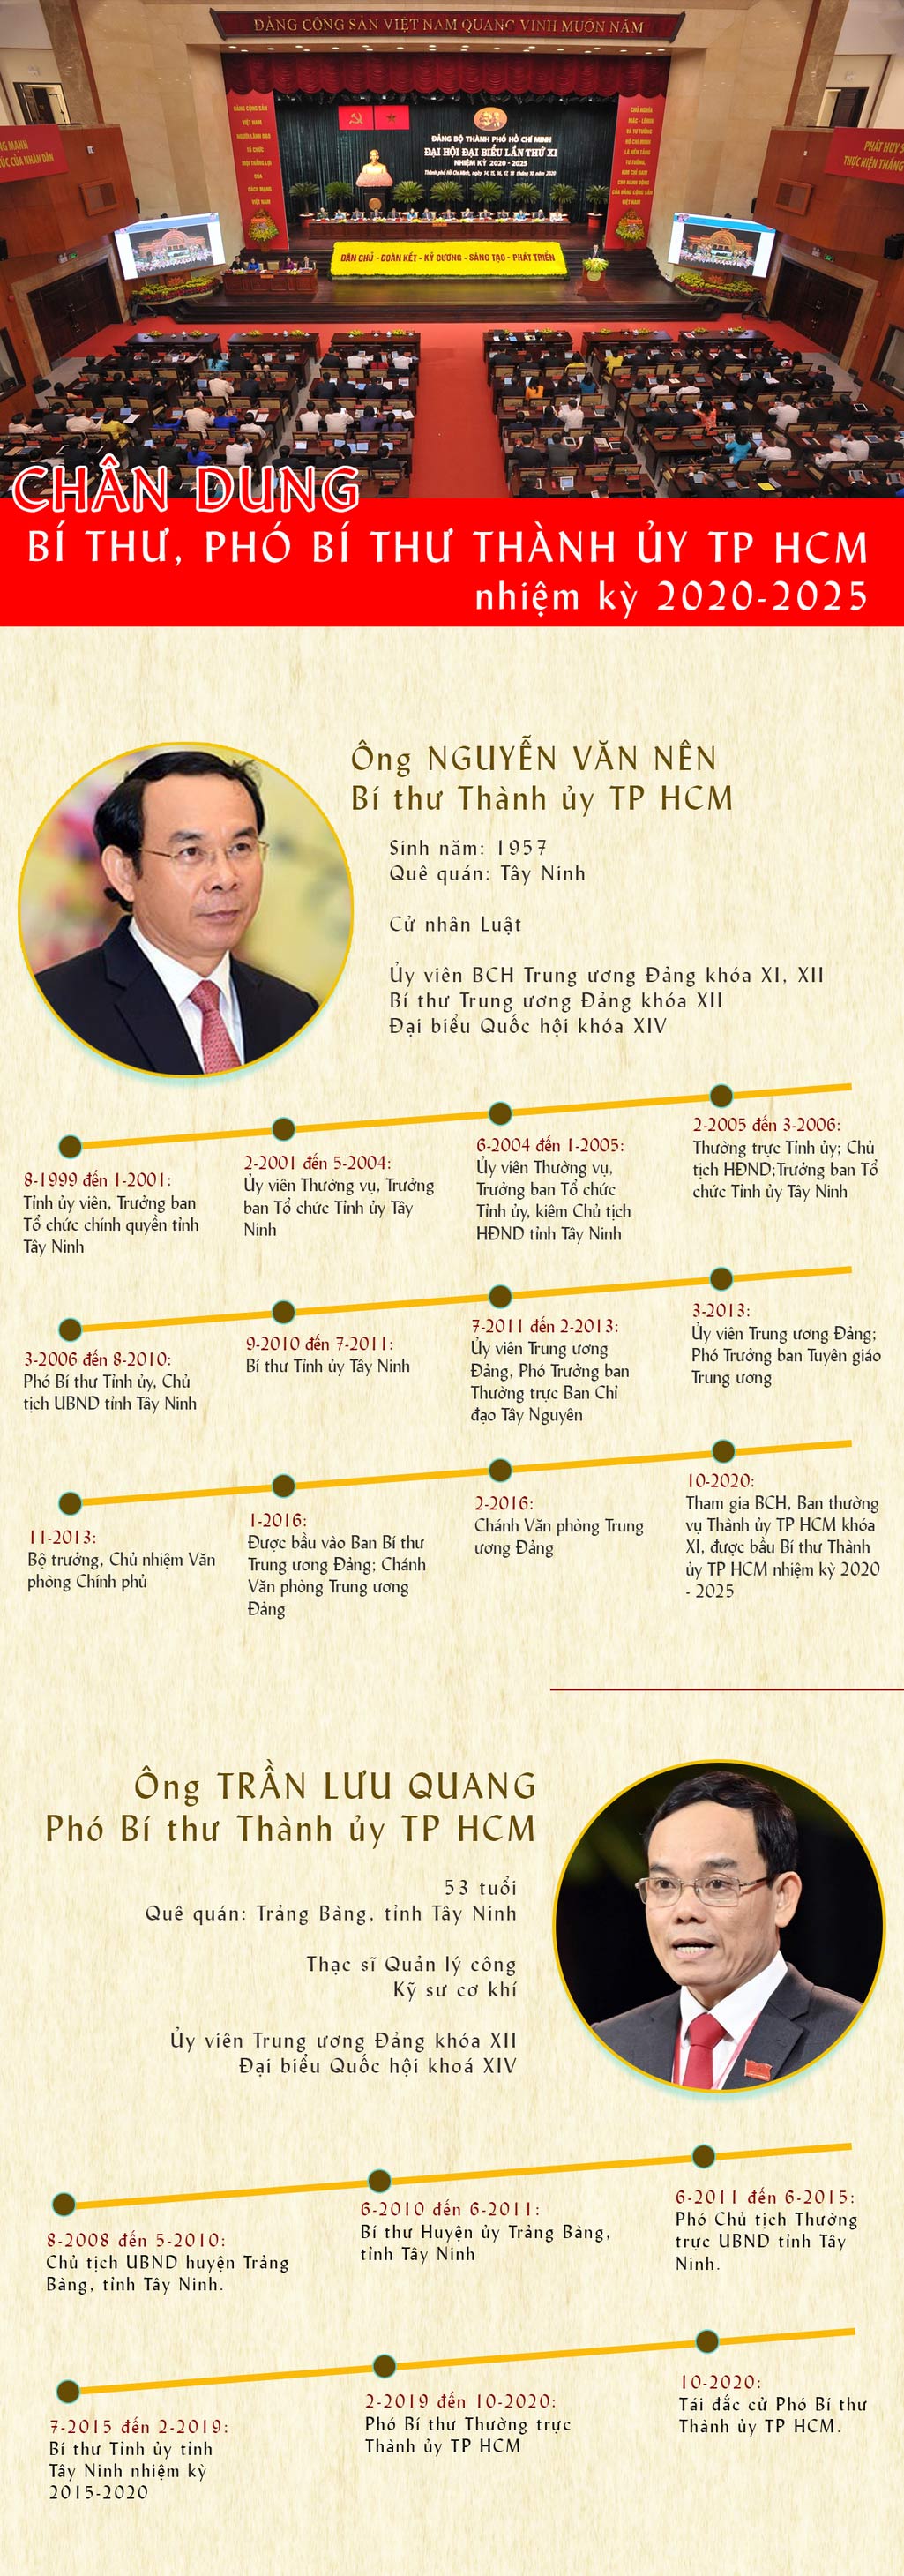 [Infographic] Chân dung Bí thư và 4 Phó Bí thư Thành ủy TP HCM - 1